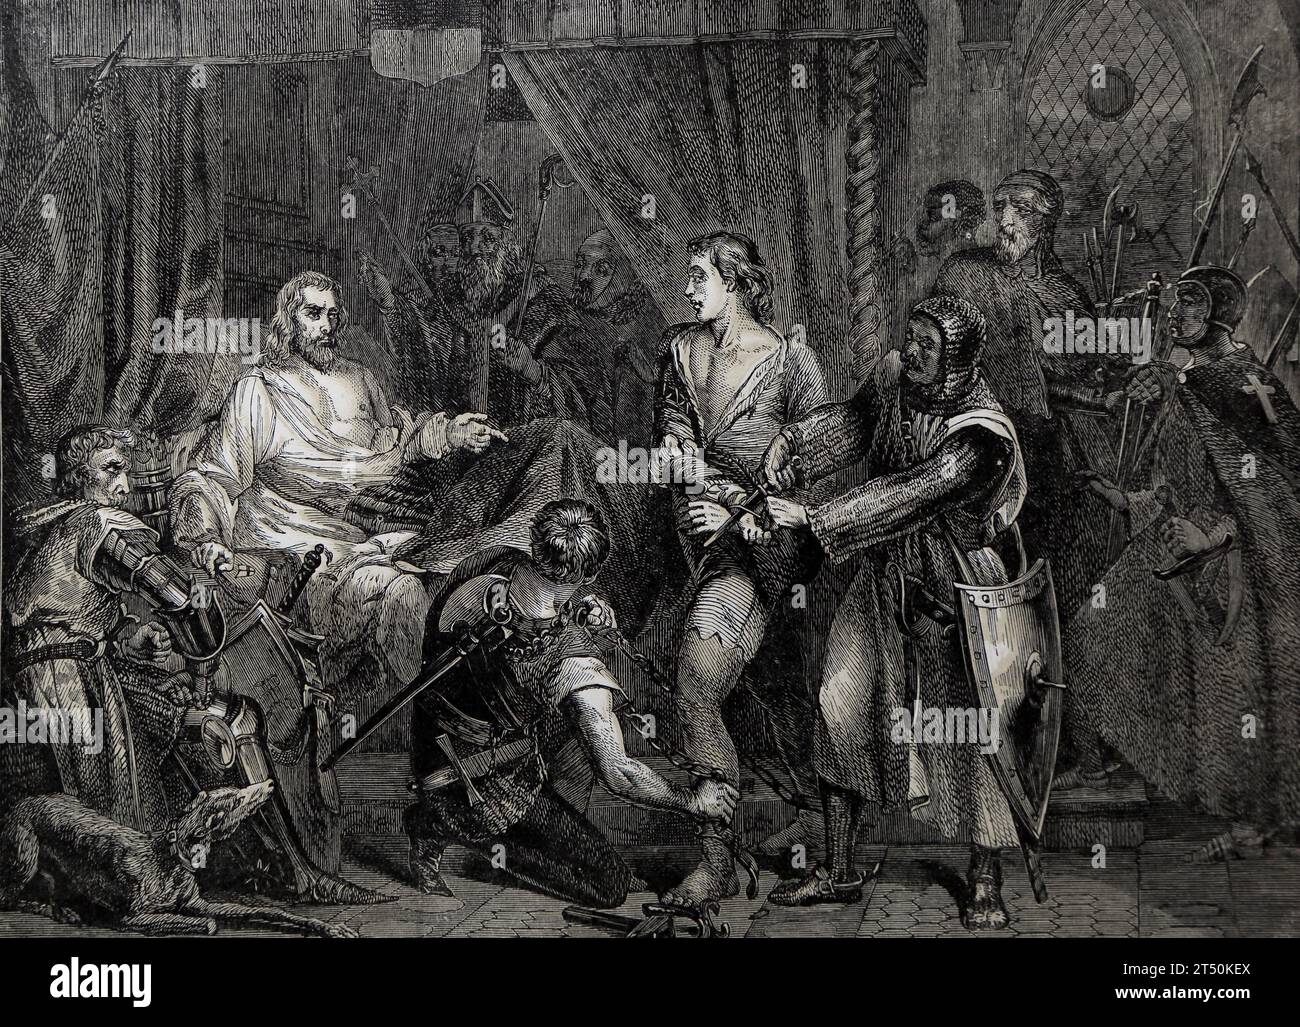 Illustration de Richard coeur de lion (Richard coeur de Lion) sur son lit de mort à chaluz pardonnant Betrund de Gurdun après qu'il ait mortellement blessé le roi Banque D'Images